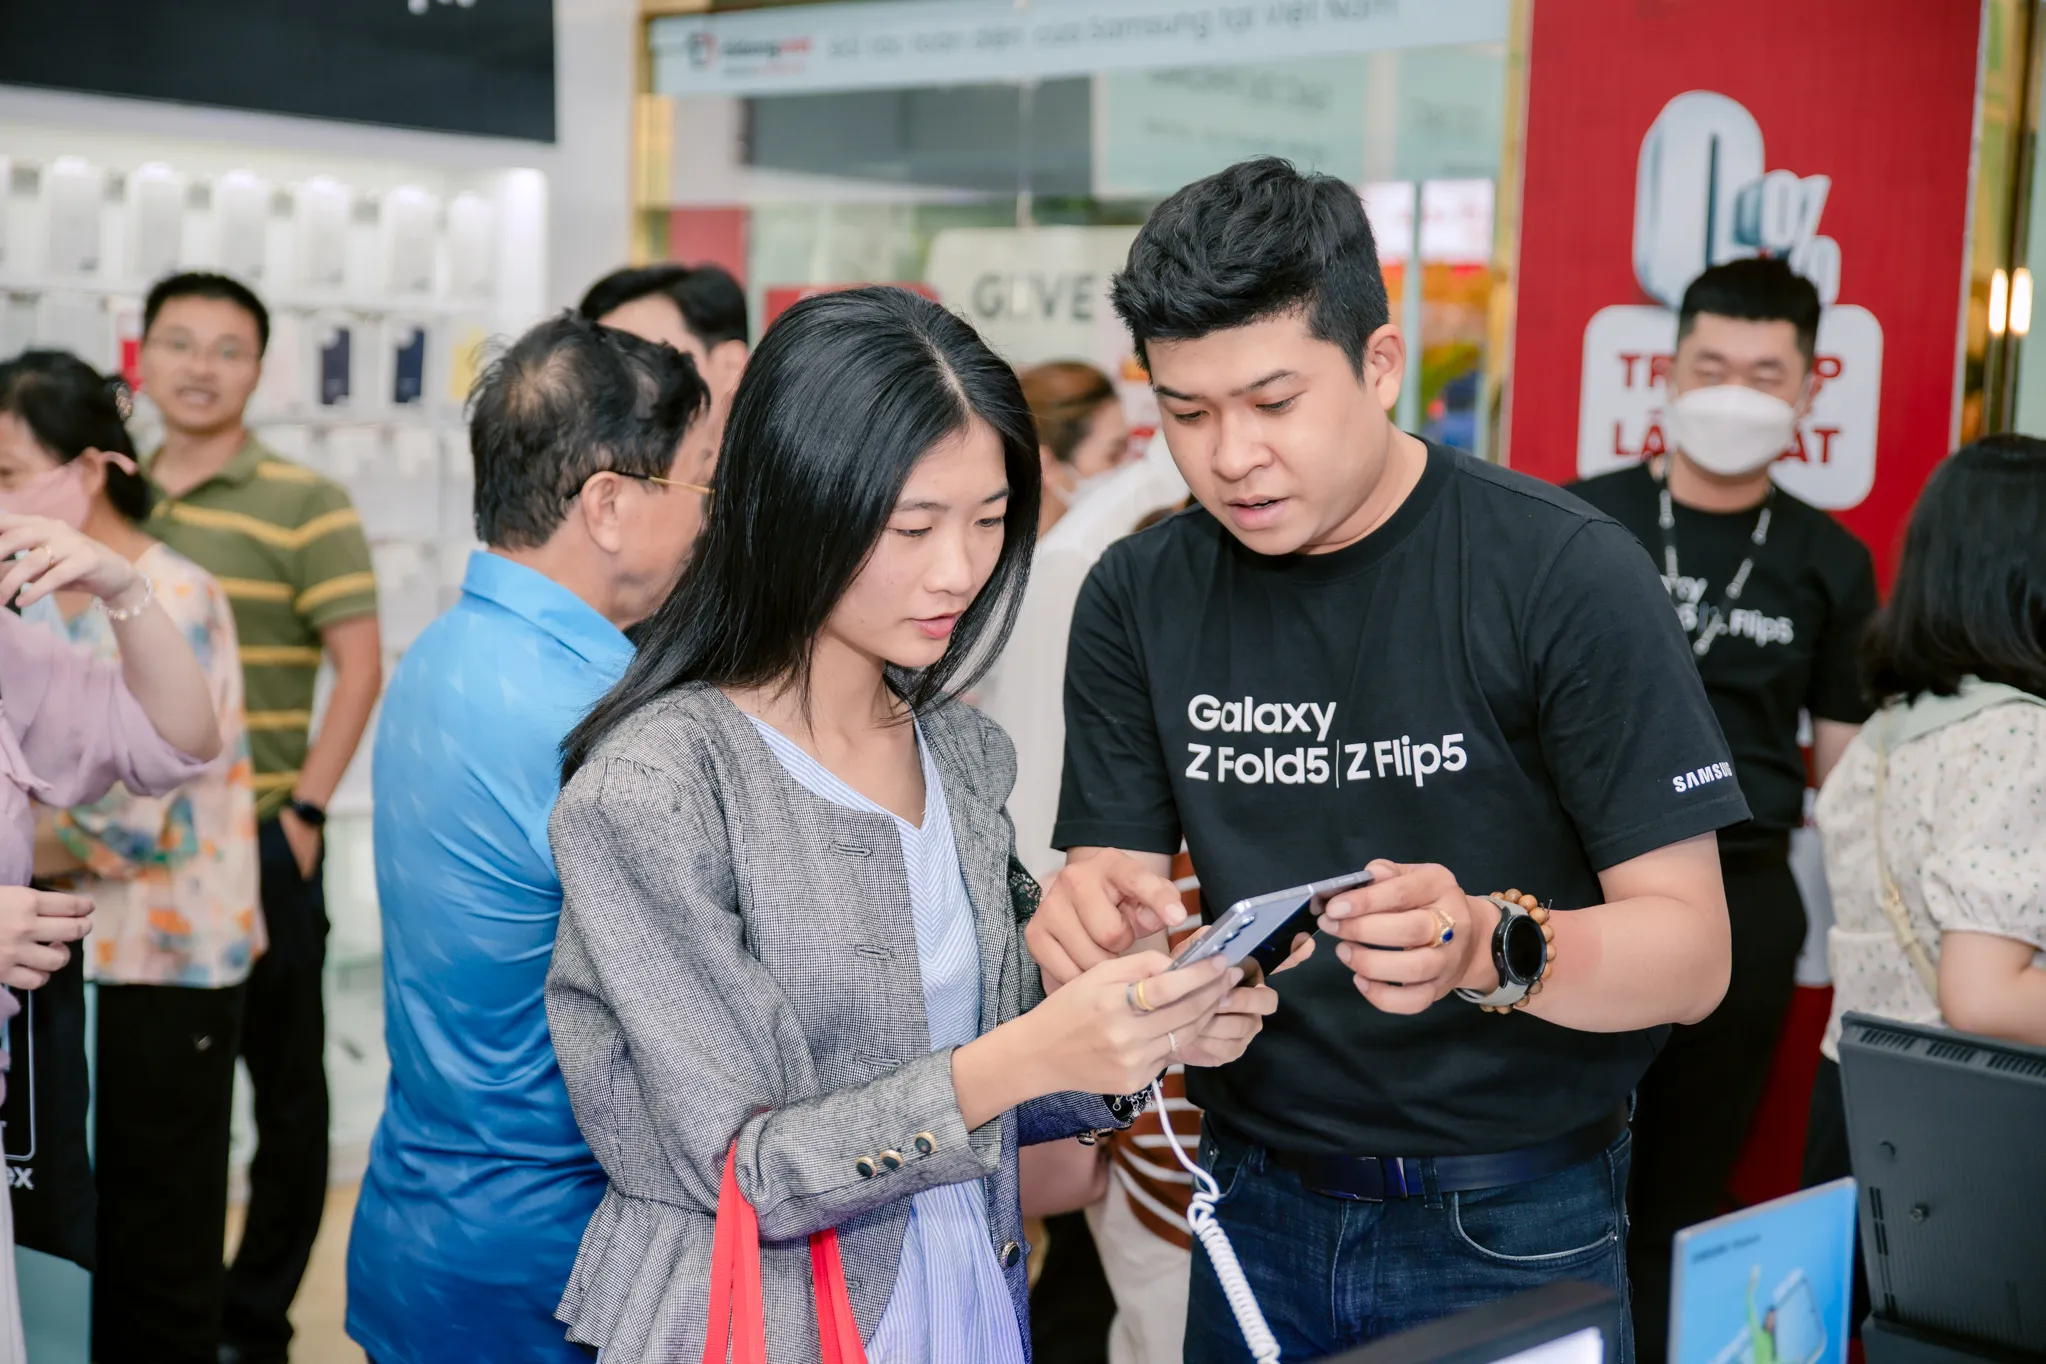 Di Động Việt tổ chức Tech Offline: Cùng khám phá Galaxy Z mới tại không gian mới